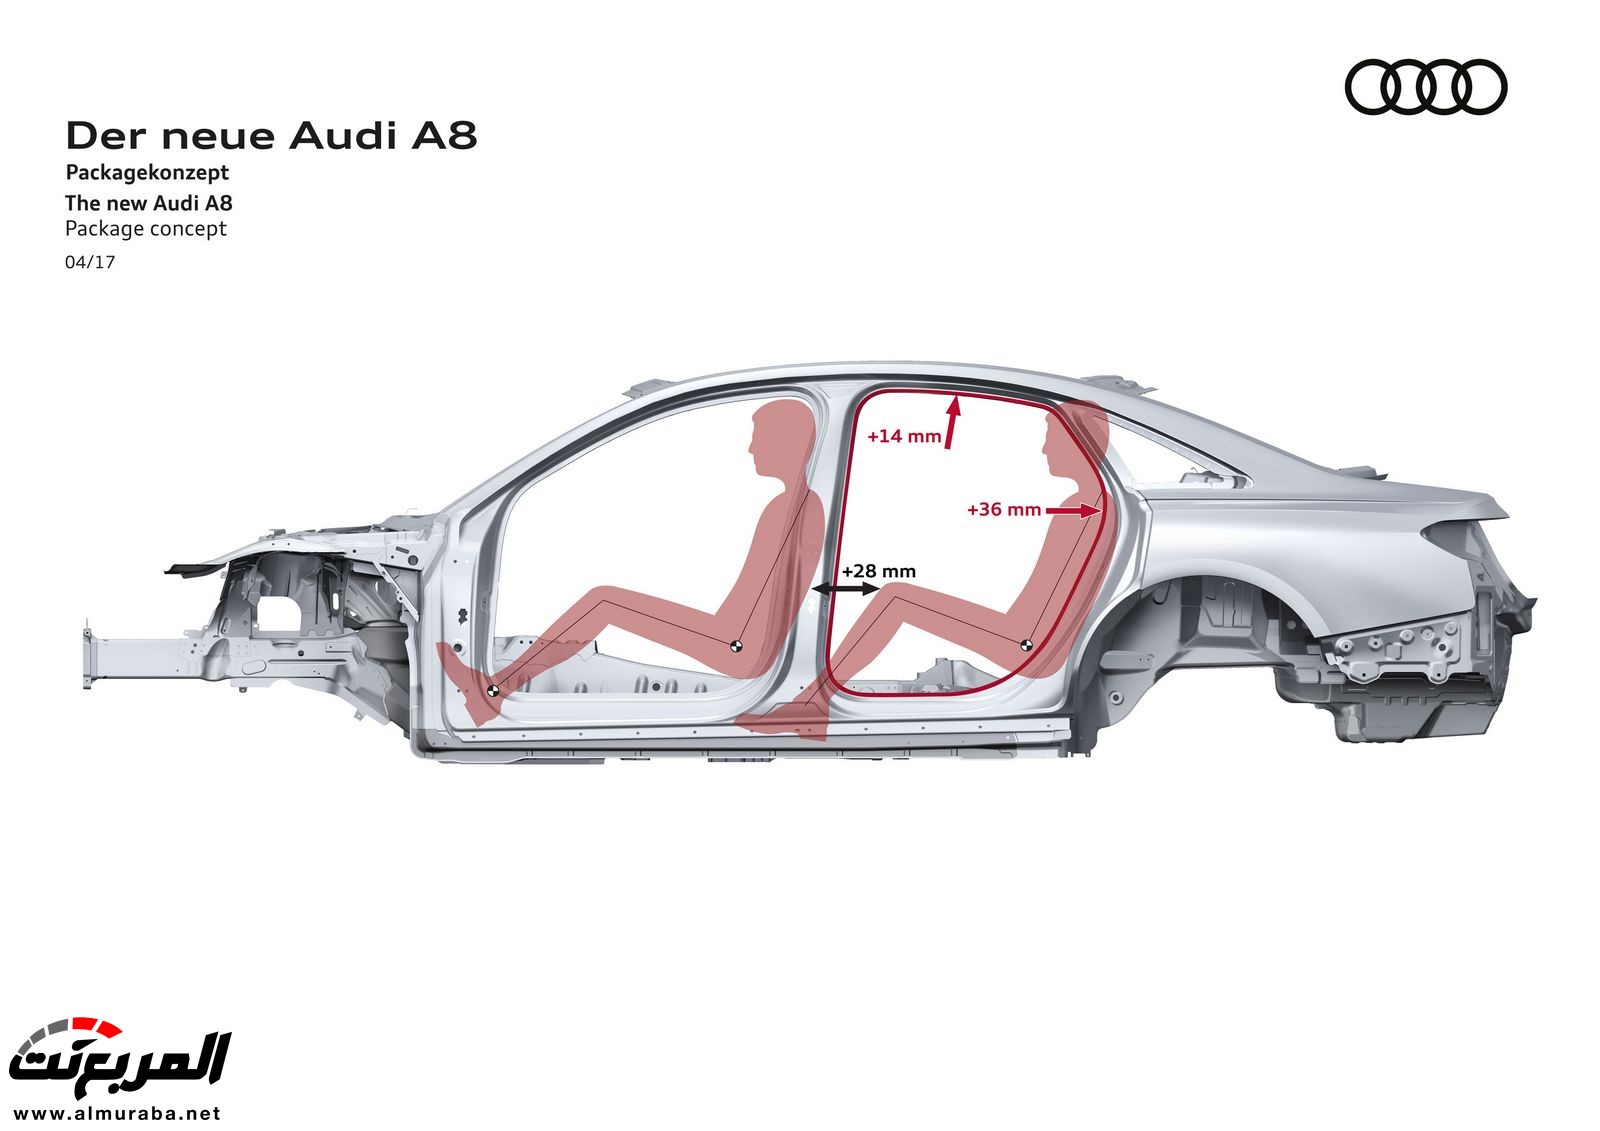 أودي A8 2018 الجديدة كلياً تكشف نفسها بتصميم وتقنيات متطورة "معلومات + 100 صورة" Audi A8 52